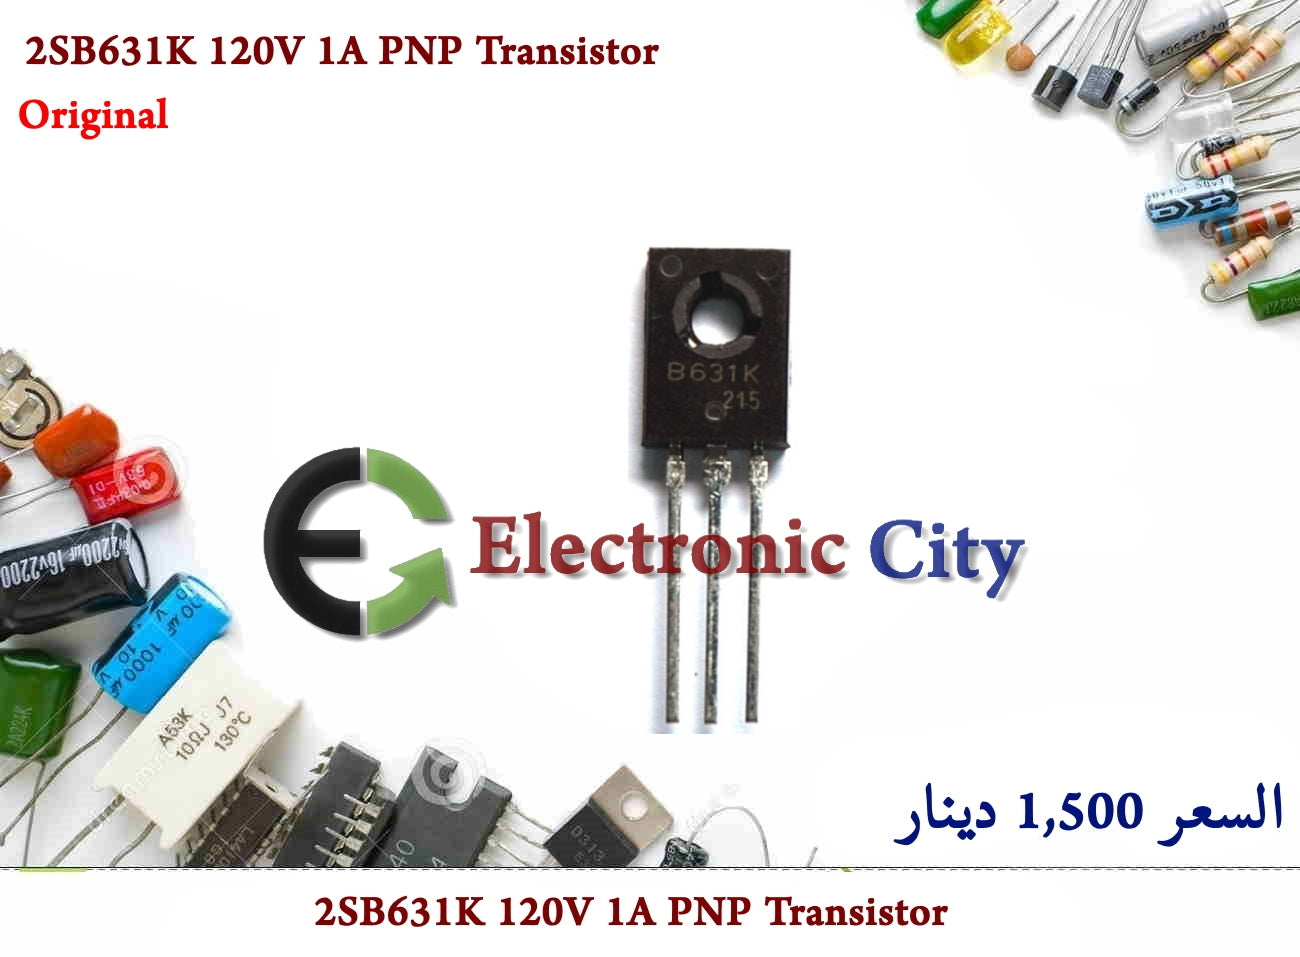 2SB631K 120V 1A PNP Transistor